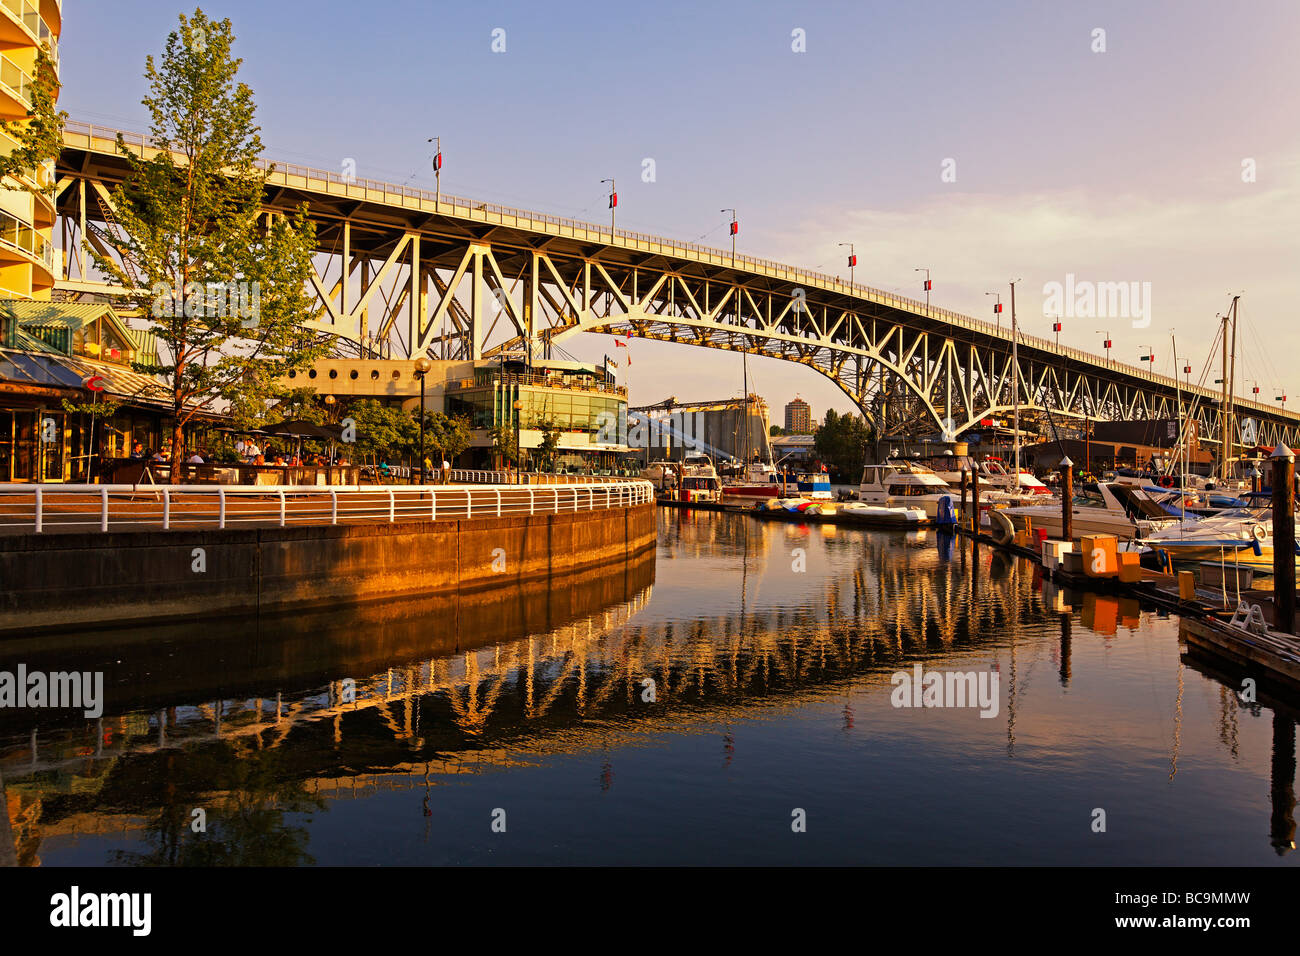 Promande et petit port de plaisance à False Creek le pont Granville Vancouver Canada Amérique du Nord Banque D'Images